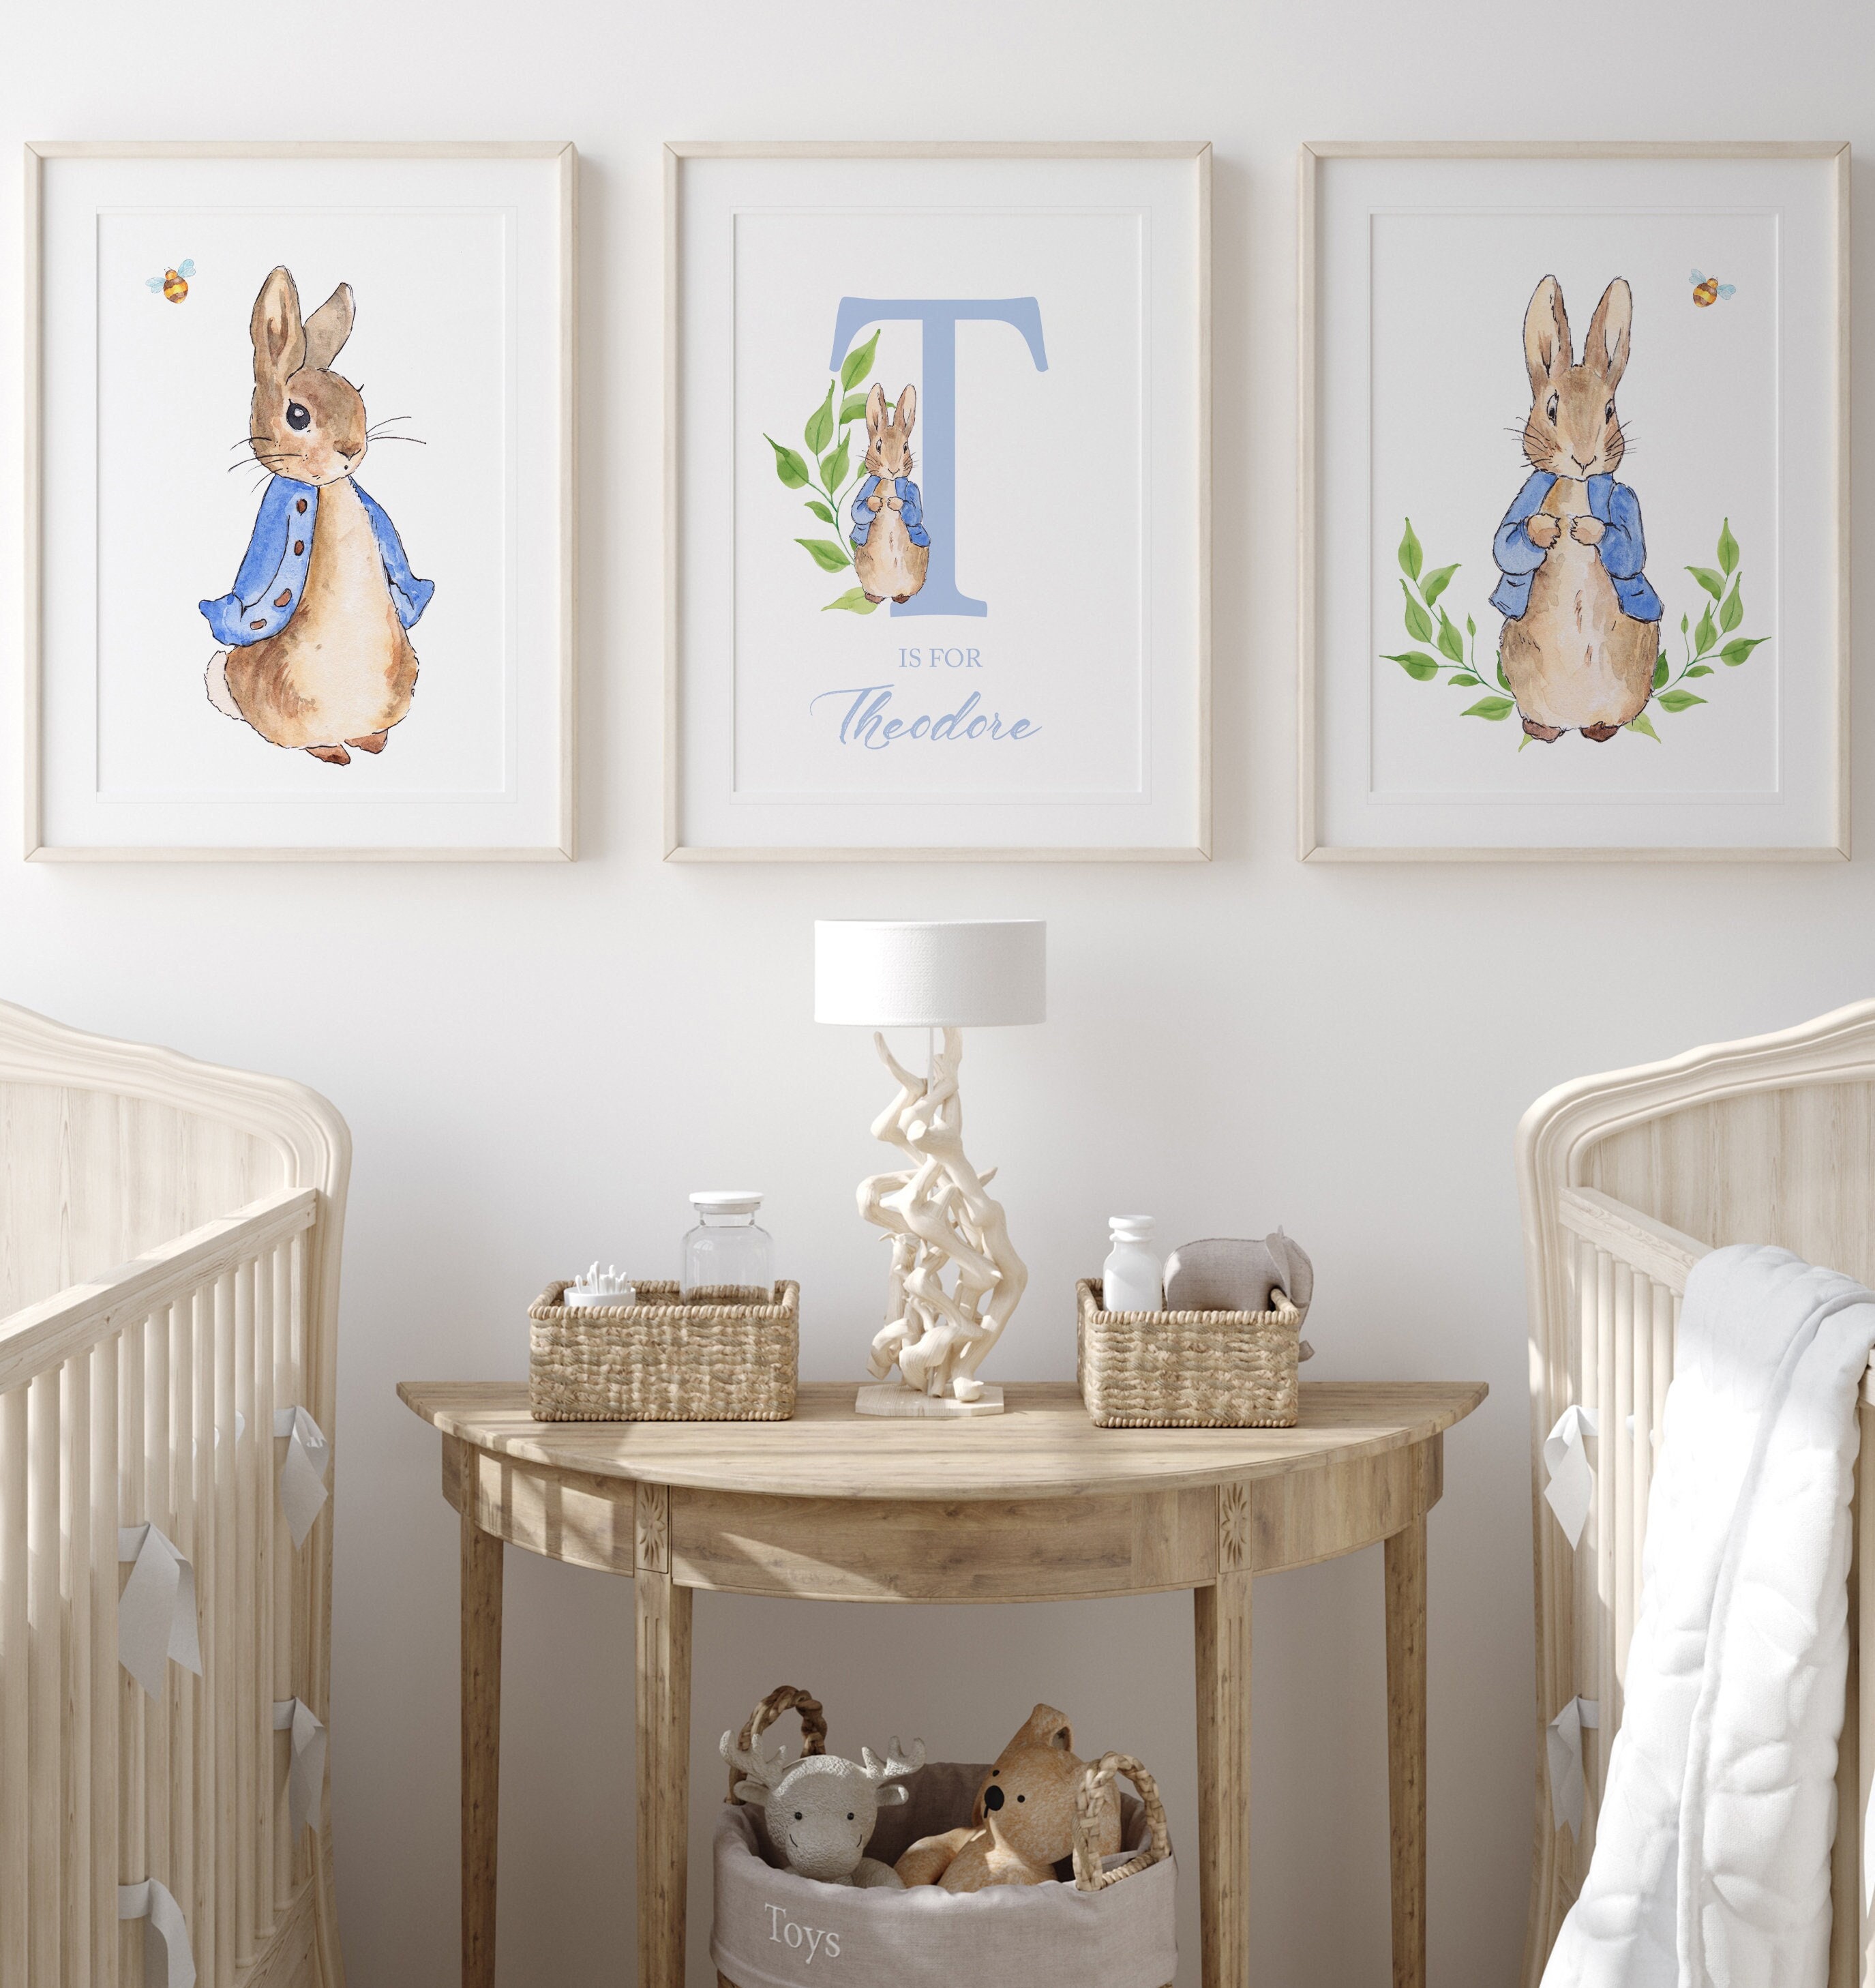 peter rabbit bedroom - decorating peter rabbit theme bedroom